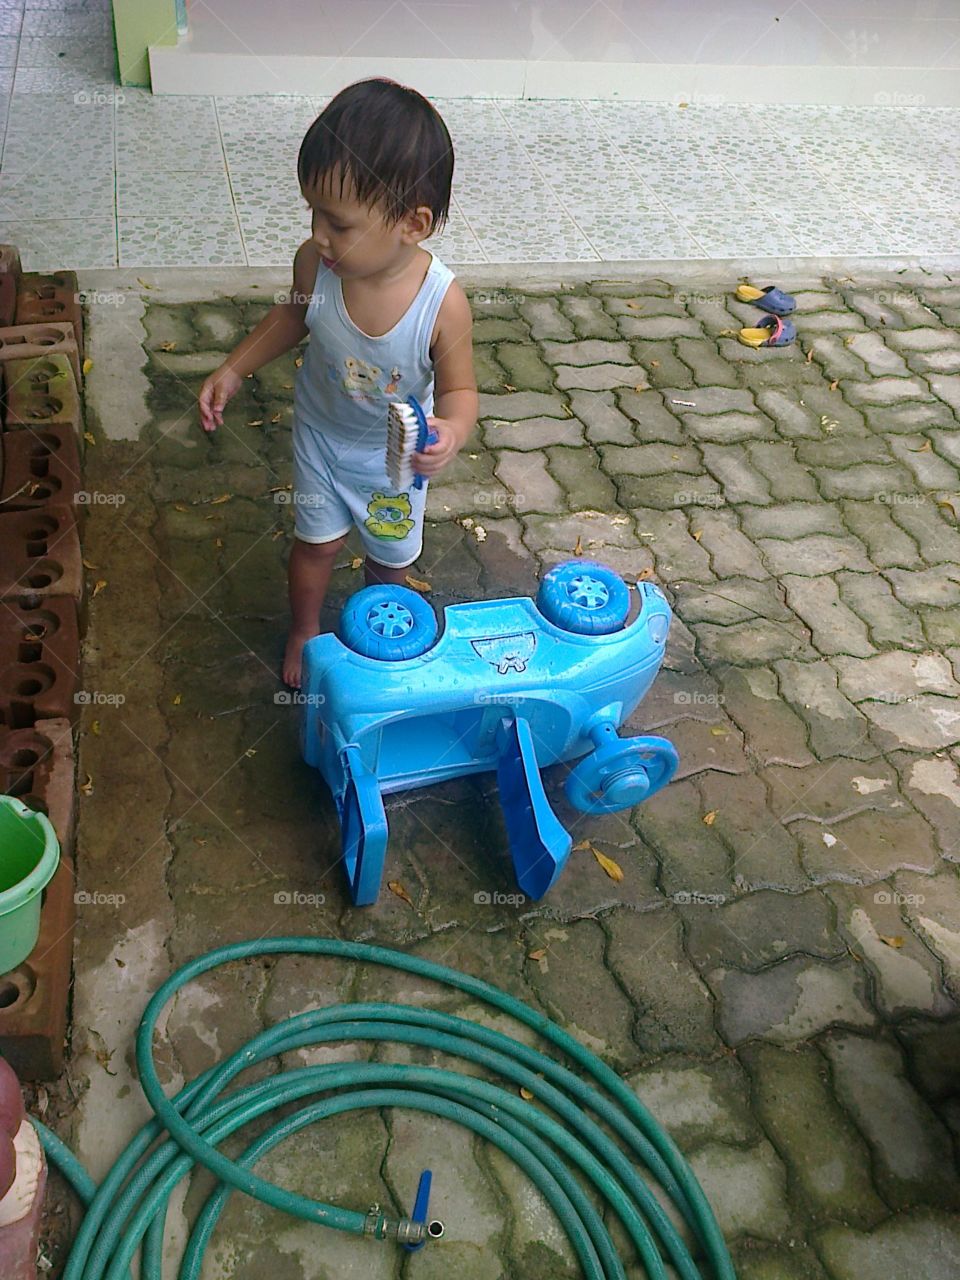 Car wash. boy cleaning his toy car